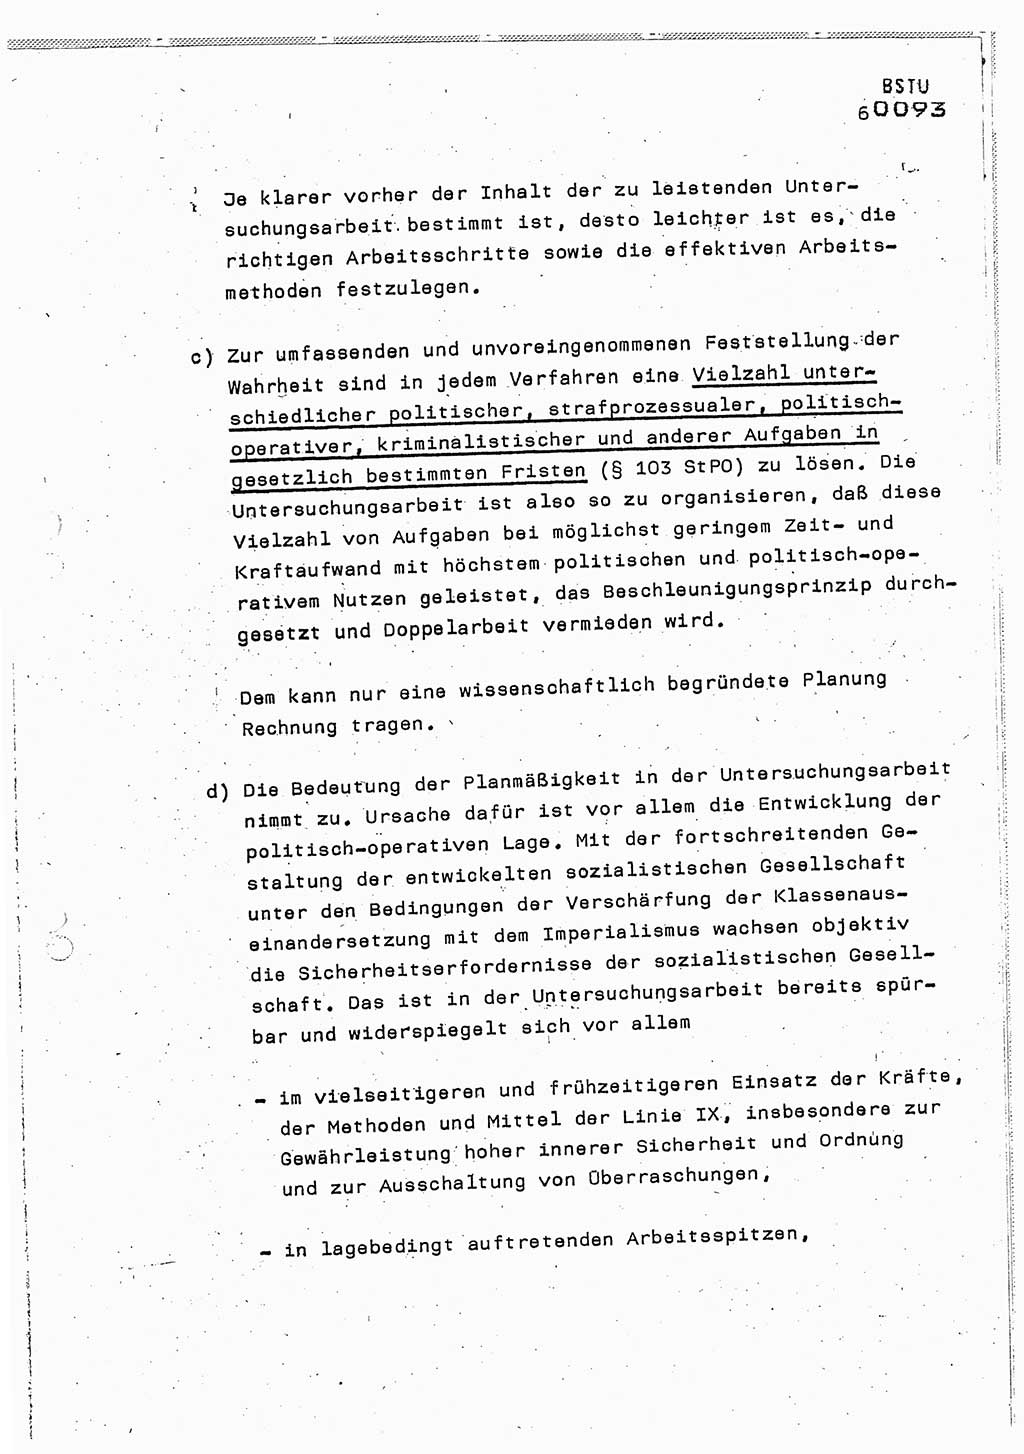 Lektion Ministerium für Staatssicherheit (MfS) [Deutsche Demokratische Republik (DDR)], Hauptabteilung (HA) Ⅸ, Berlin 1987, Seite 6 (Lekt. Pln. Bearb. EV MfS DDR HA Ⅸ /87 1987, S. 6)